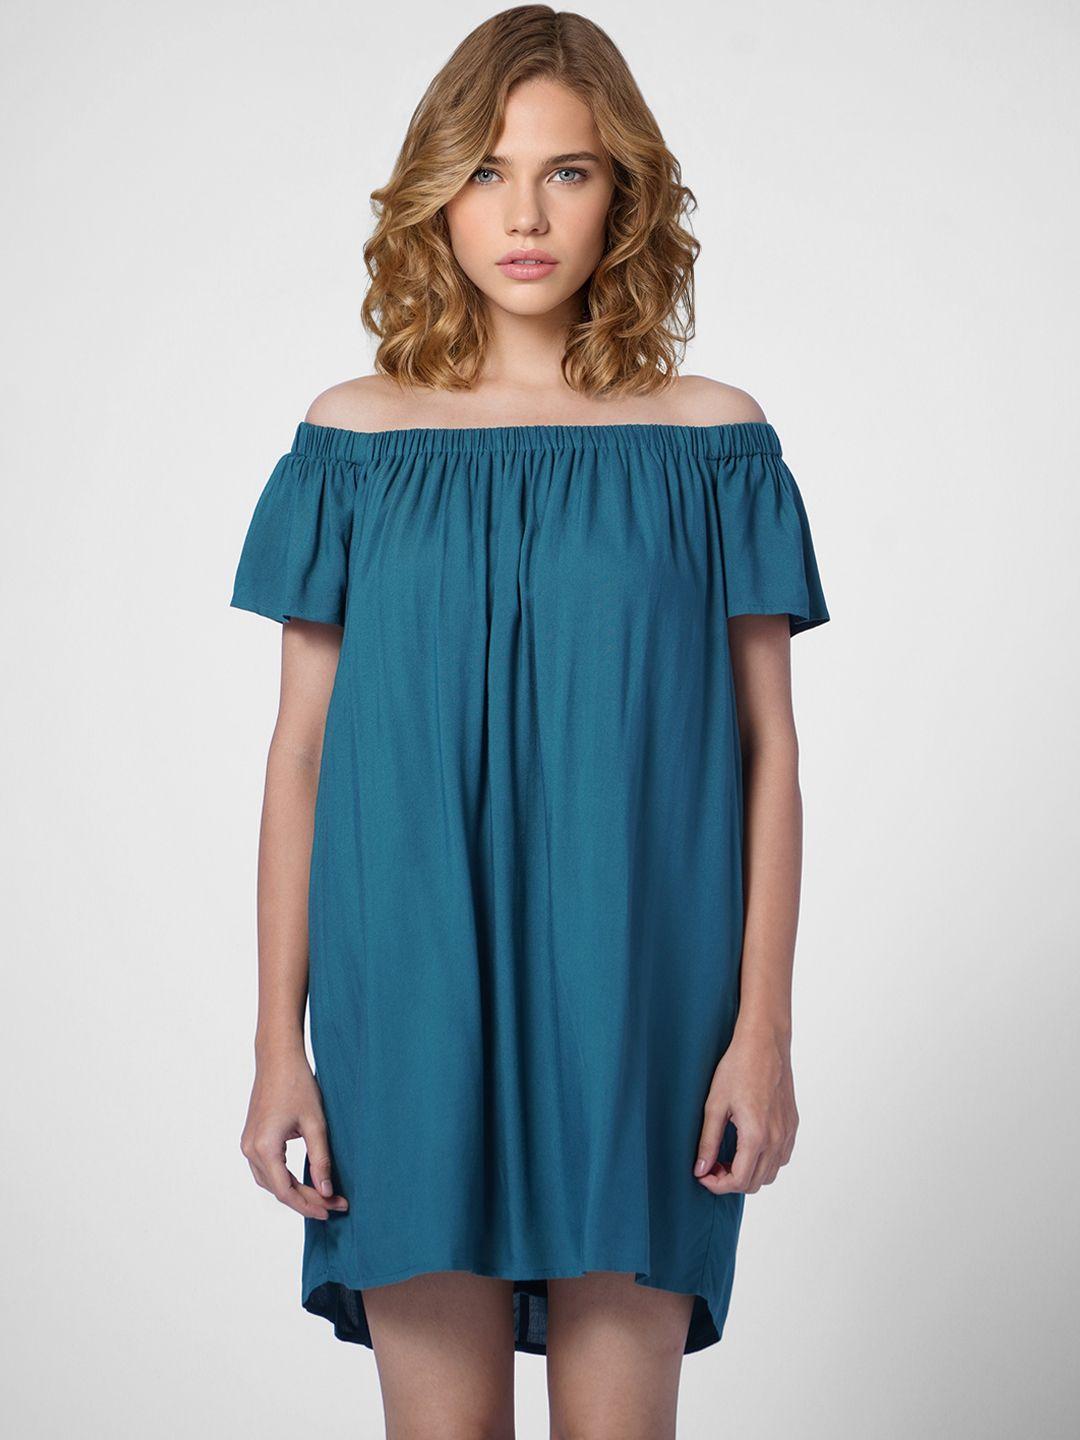 only women teal blue off-shoulder a-line dress